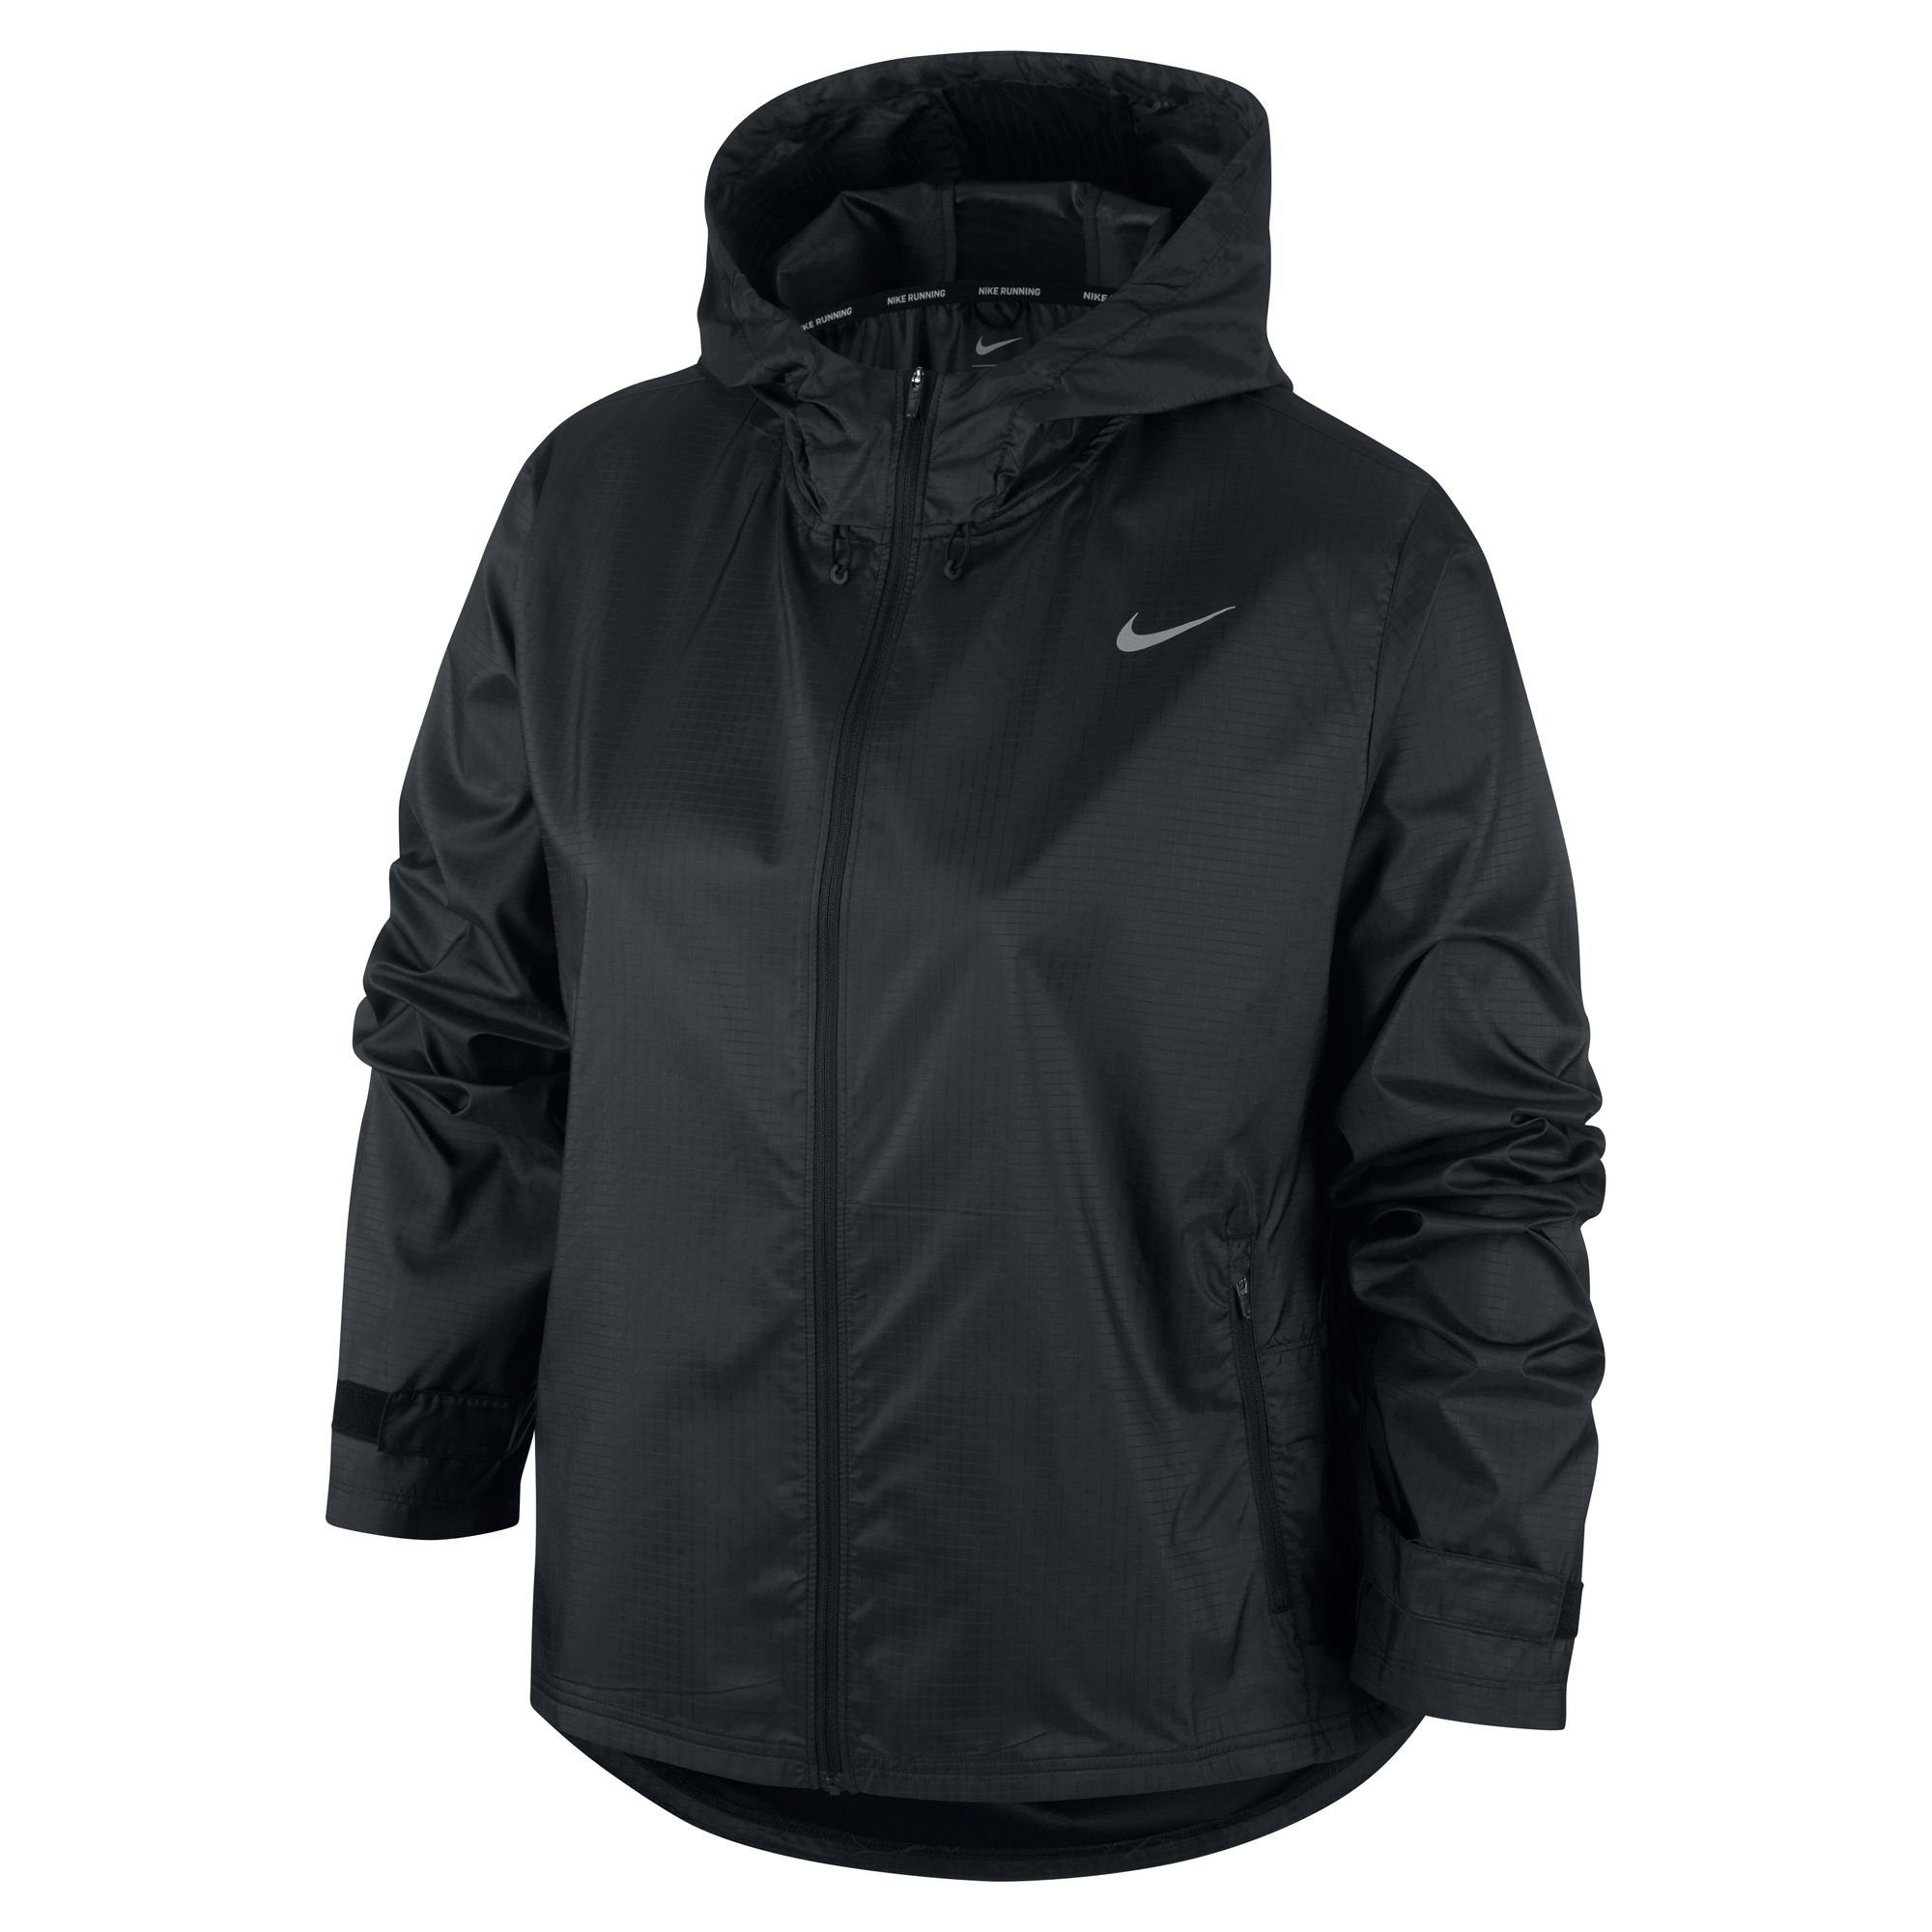 Essential Running Nike schwarz Laufjacke Jacket Women's